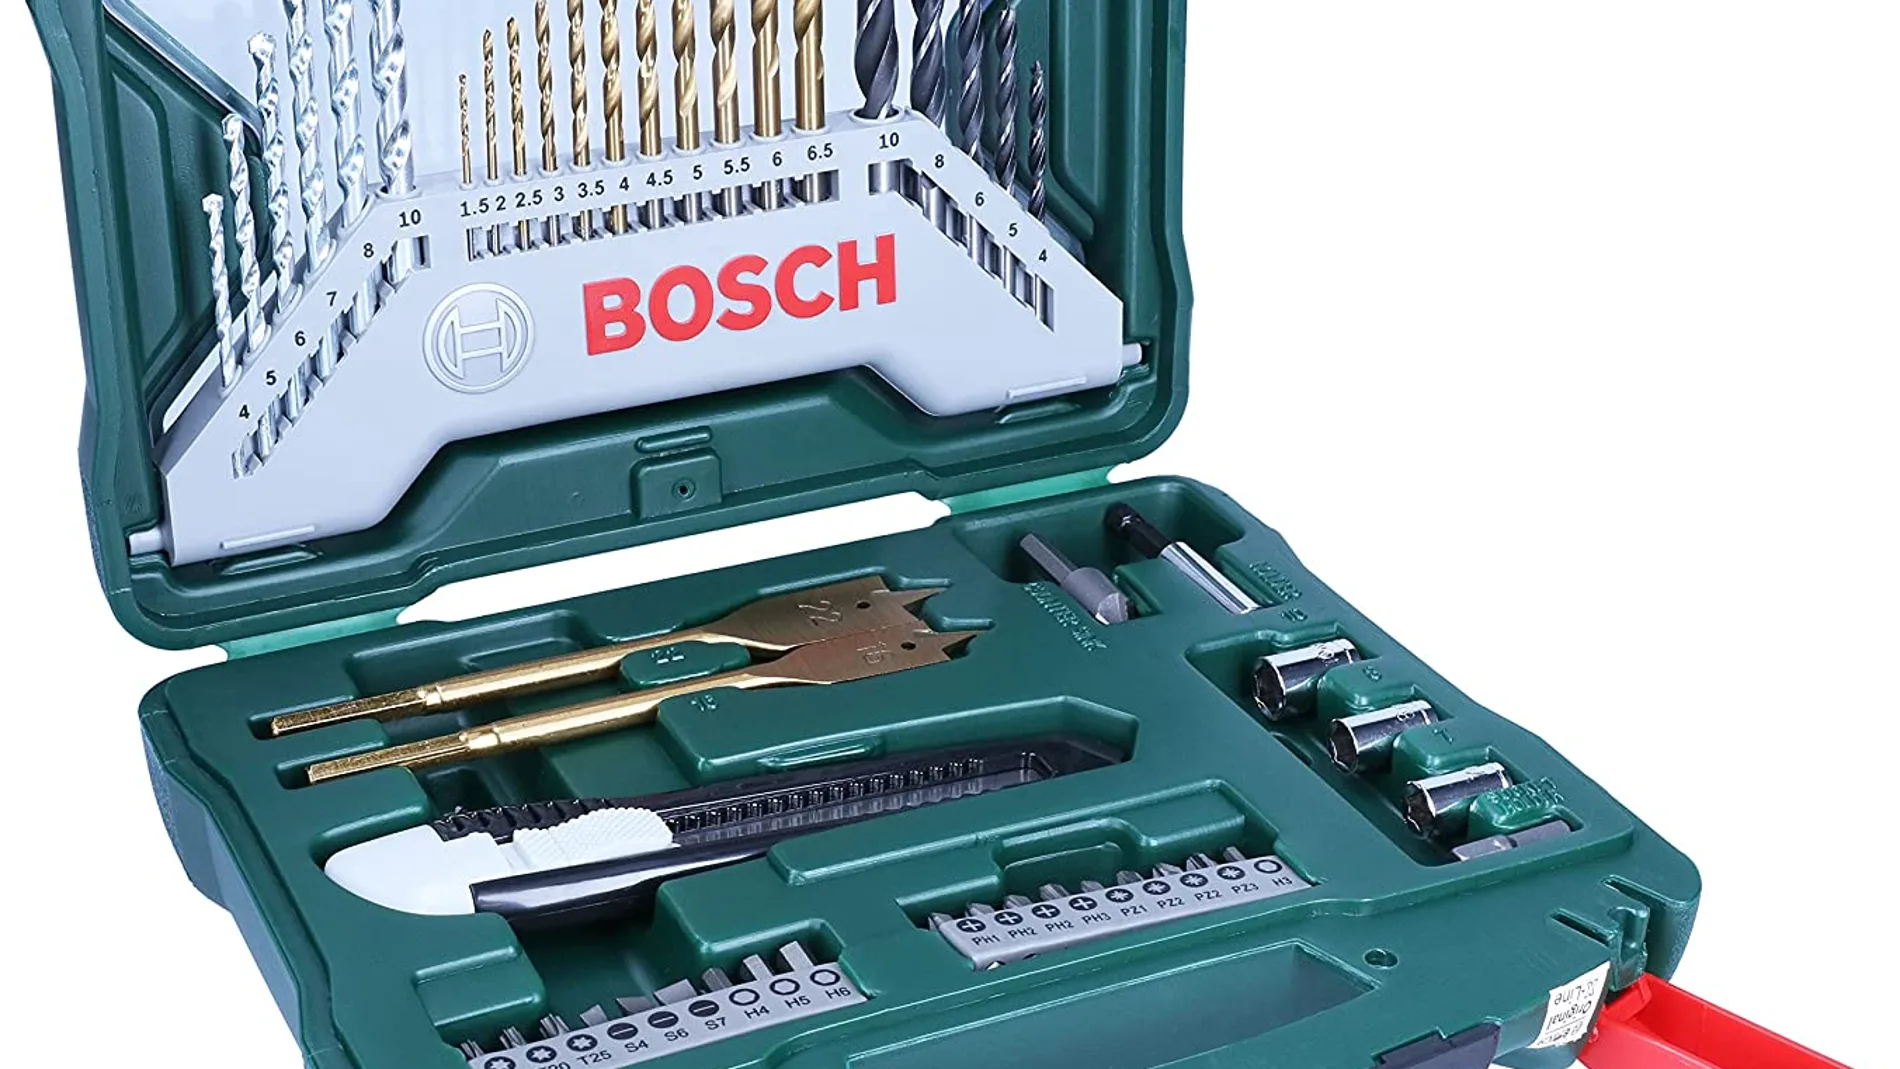 La caja de herramientas más vendida, casi regalada en Amazon (y es de Bosch)